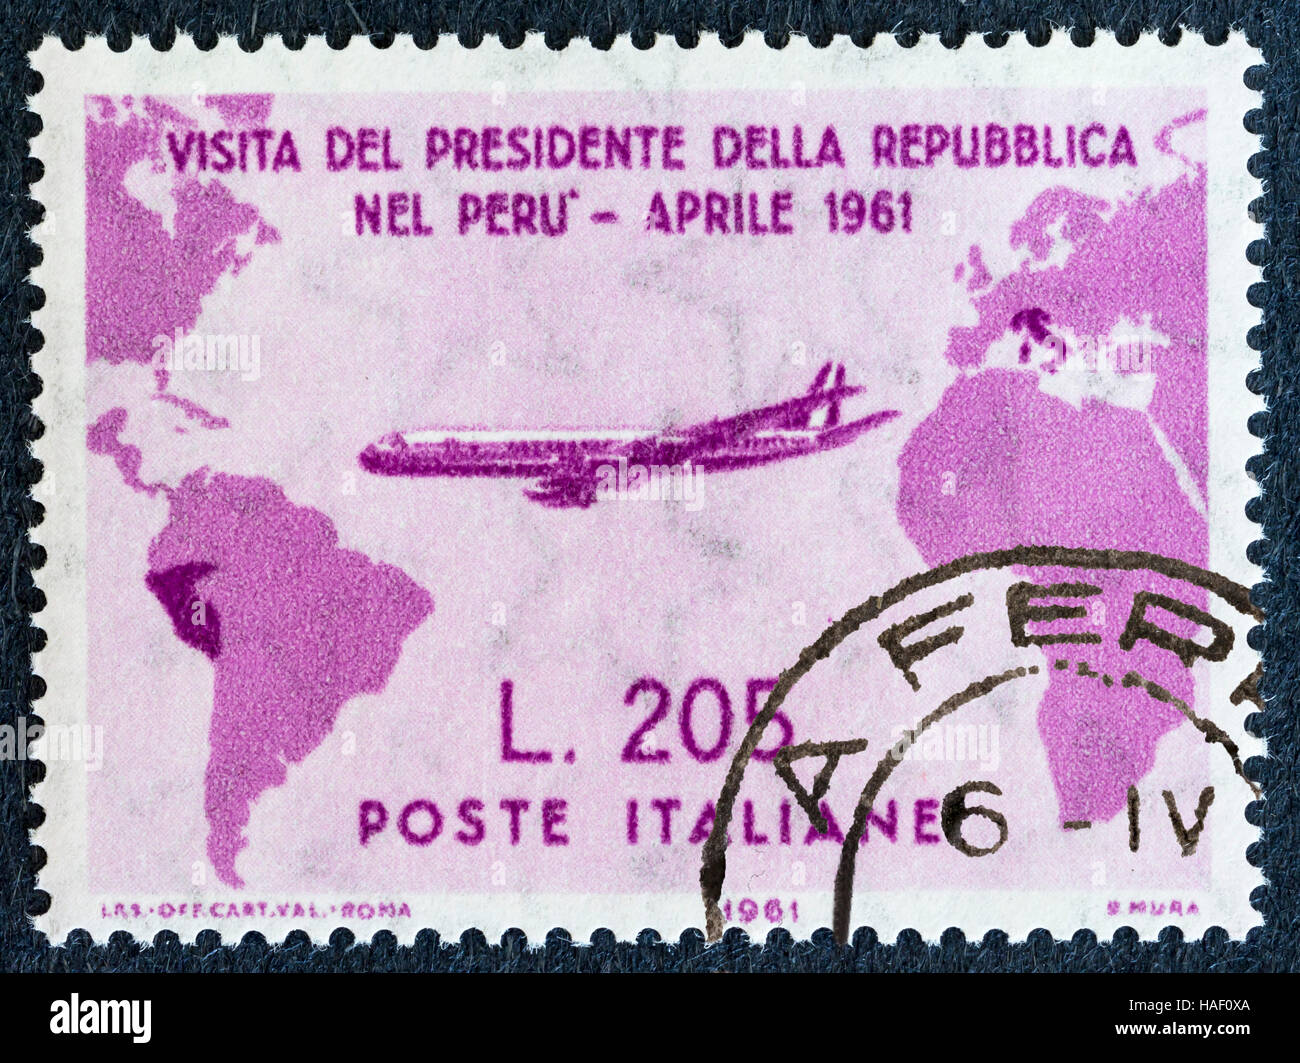 Biella, Italien - 26. November 2016. Seltene post Stempel "gronchi Rosa", der Besuch von Präsident gronchi in Peru im April 1961 Stockfoto